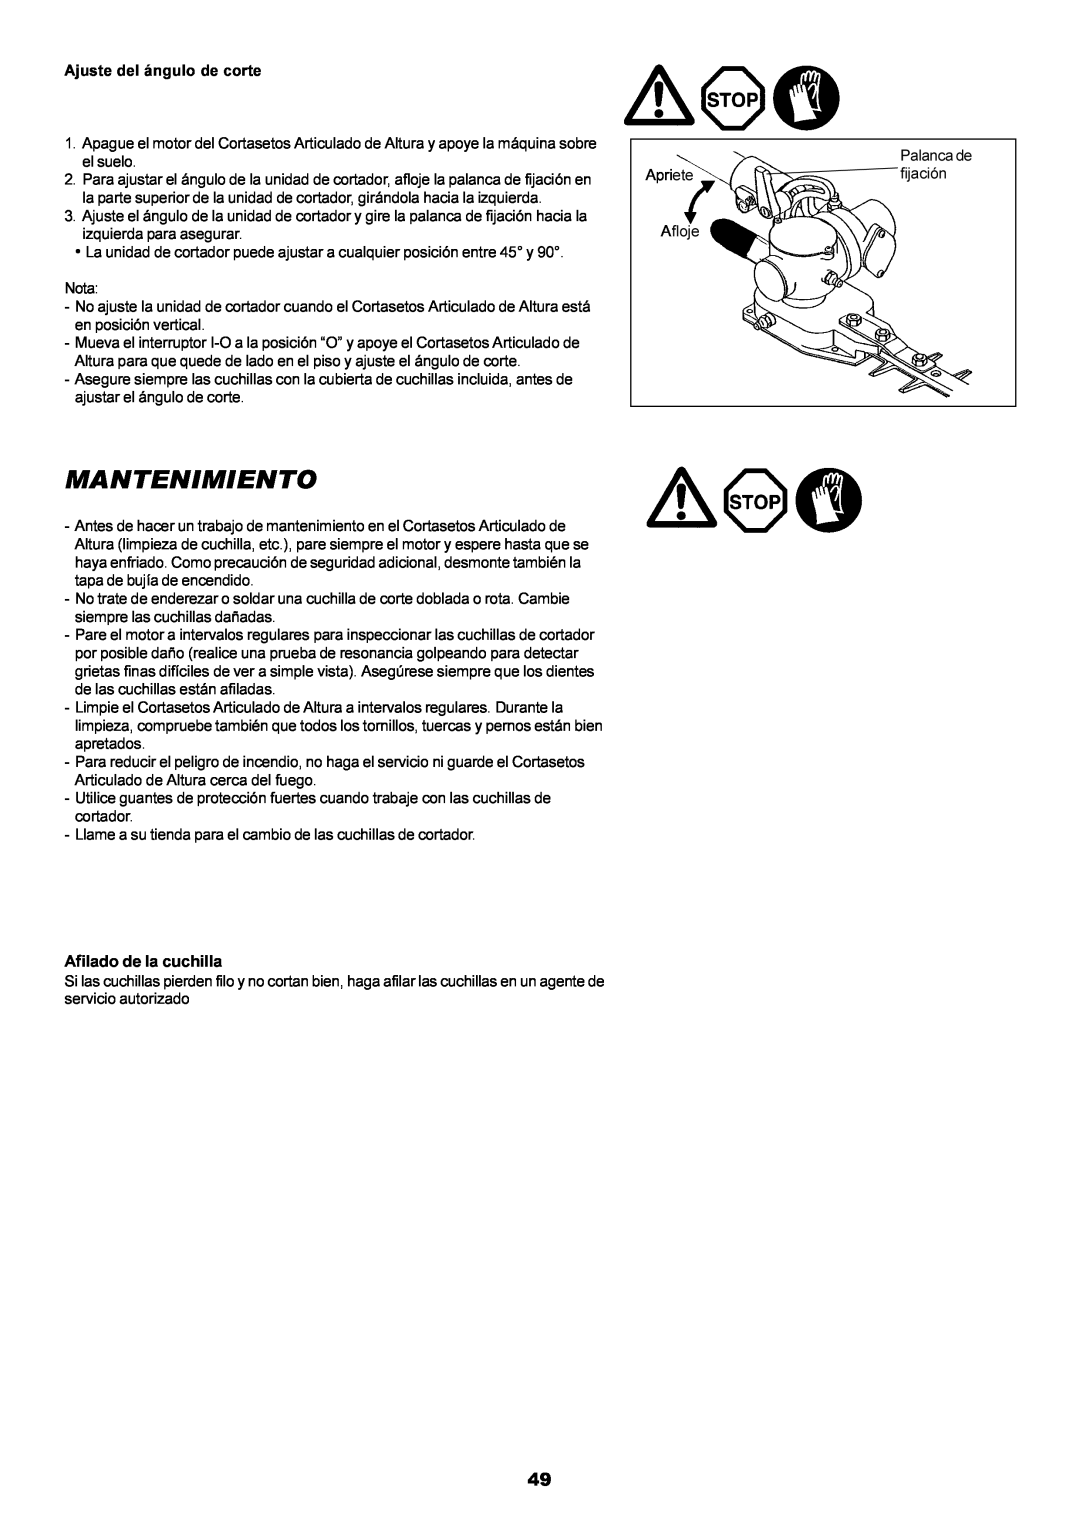 Dolmar MH-2556 instruction manual Mantenimiento, Afilado de la cuchilla 